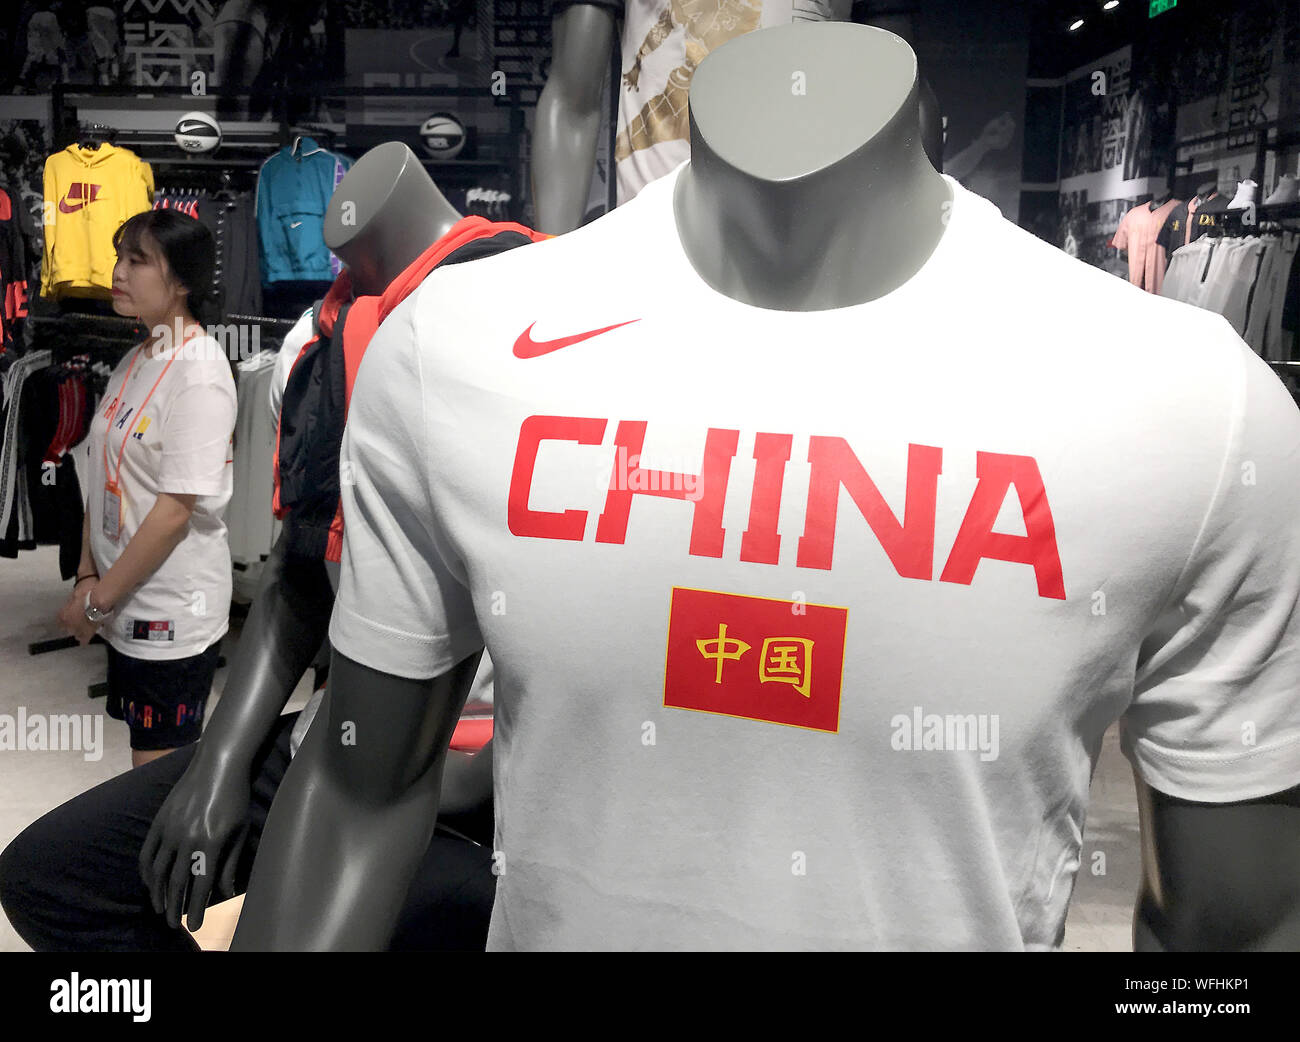 Eine chinesische Verkäuferin wartet auf Kunden in einem Nike Store auf internationaler Shopping Mall in Peking am Samstag, den 31. August 2019. Aktuellsten Tarife Ziele chinesischen US-Präsident Donald Trump-Produkten in die USA exportiert, darunter US-Bekleidung, Schuhe und Haushaltsgeräte. Foto von Stephen Rasierer/UPI Stockfoto